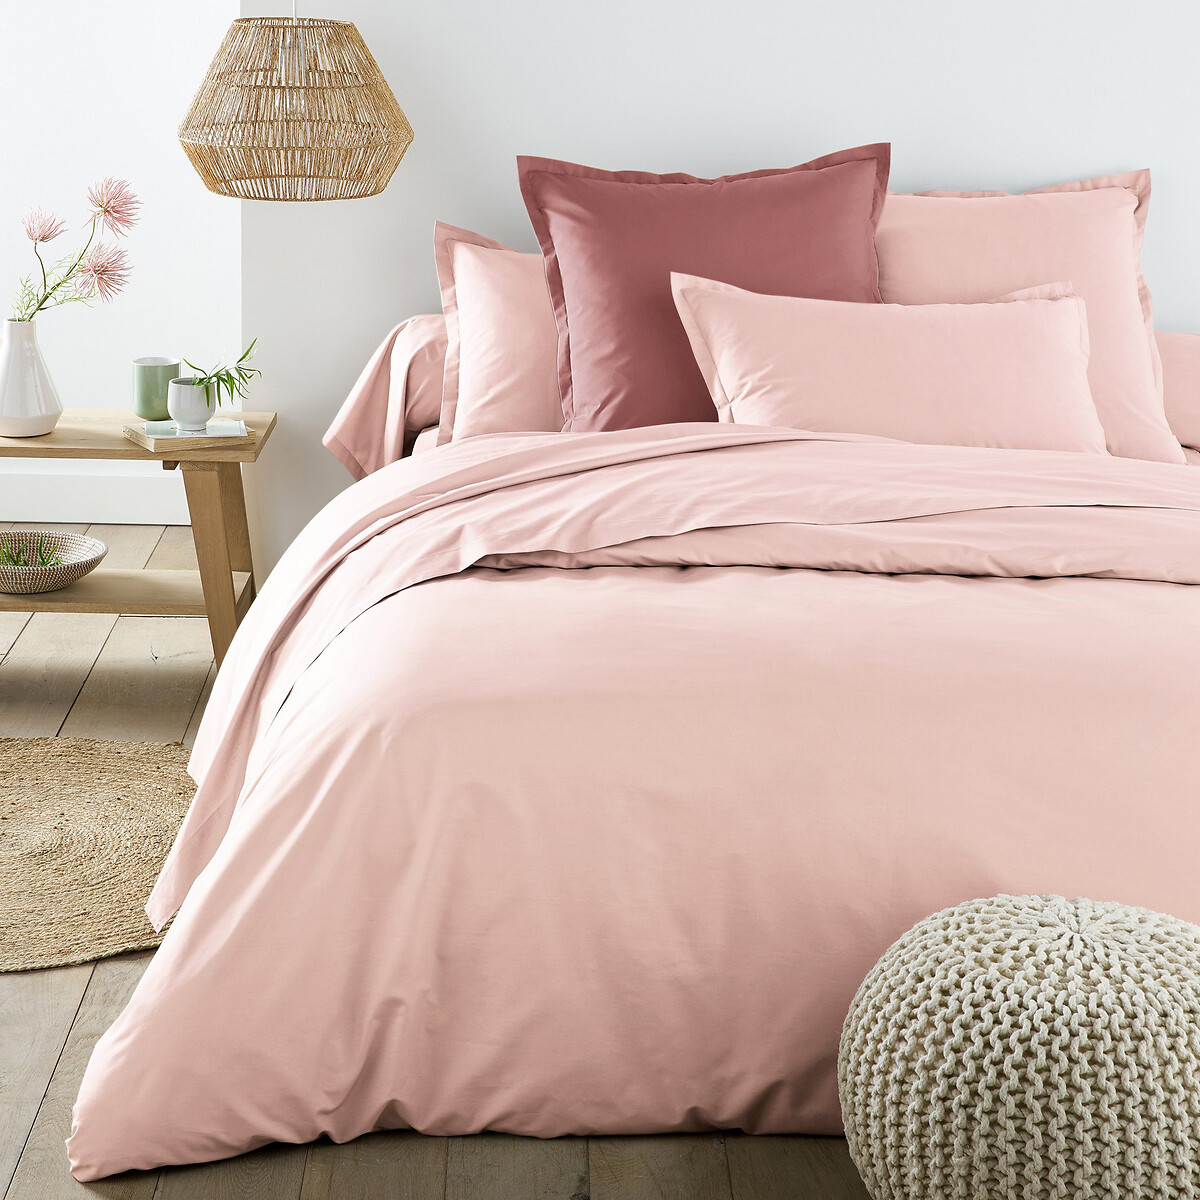 Best Quality Plain Cotton Percale Duvet, Plain Light Pink Duvet Cover